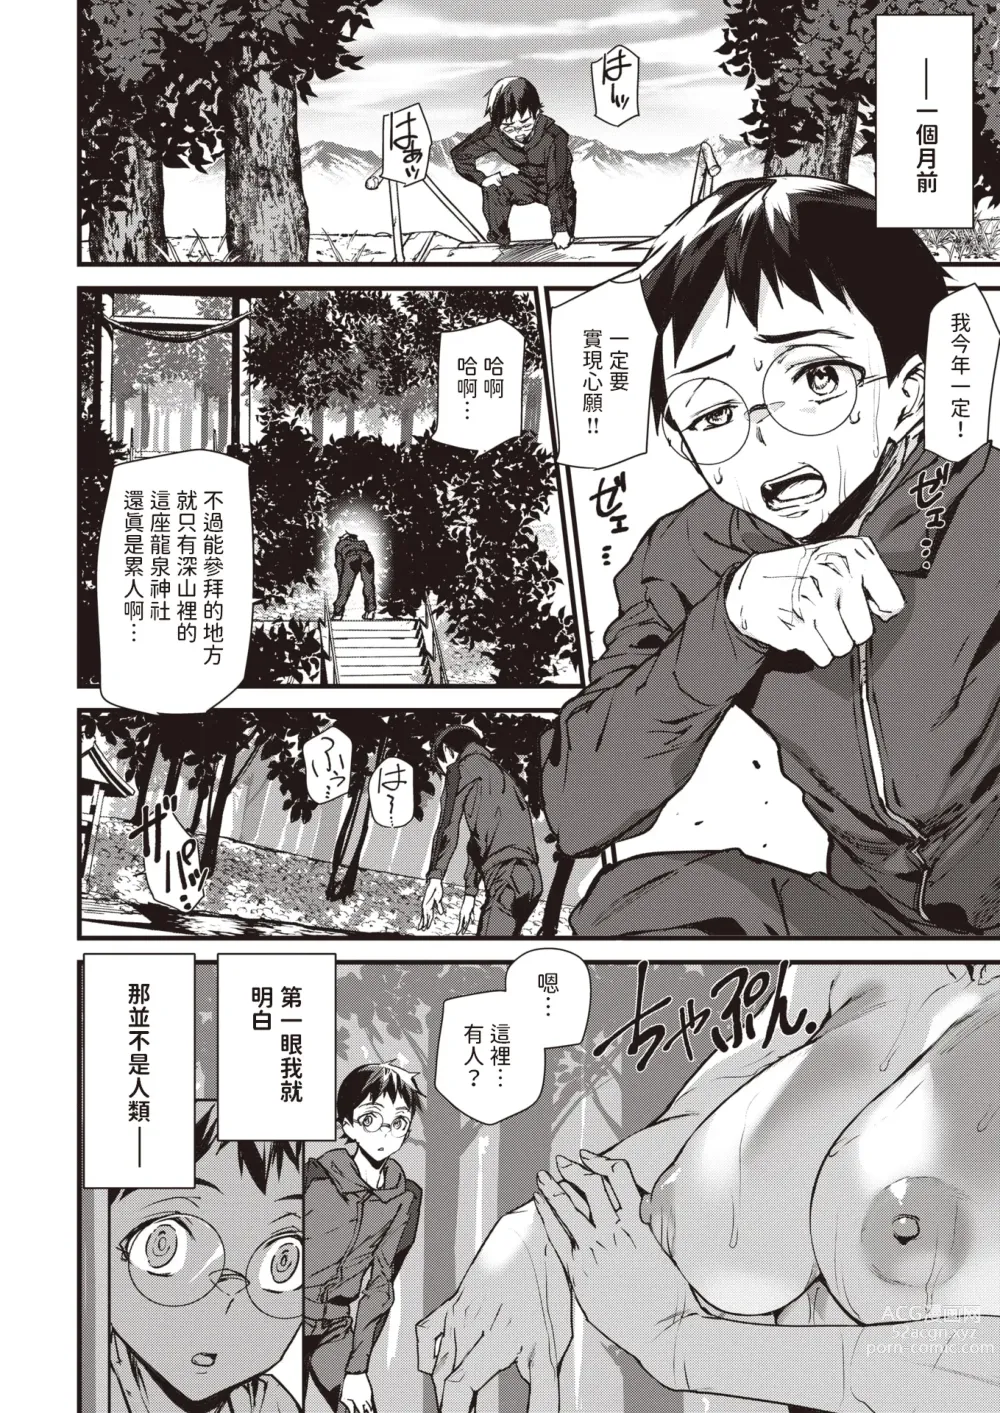 Page 2 of manga Ryuujin Kigan